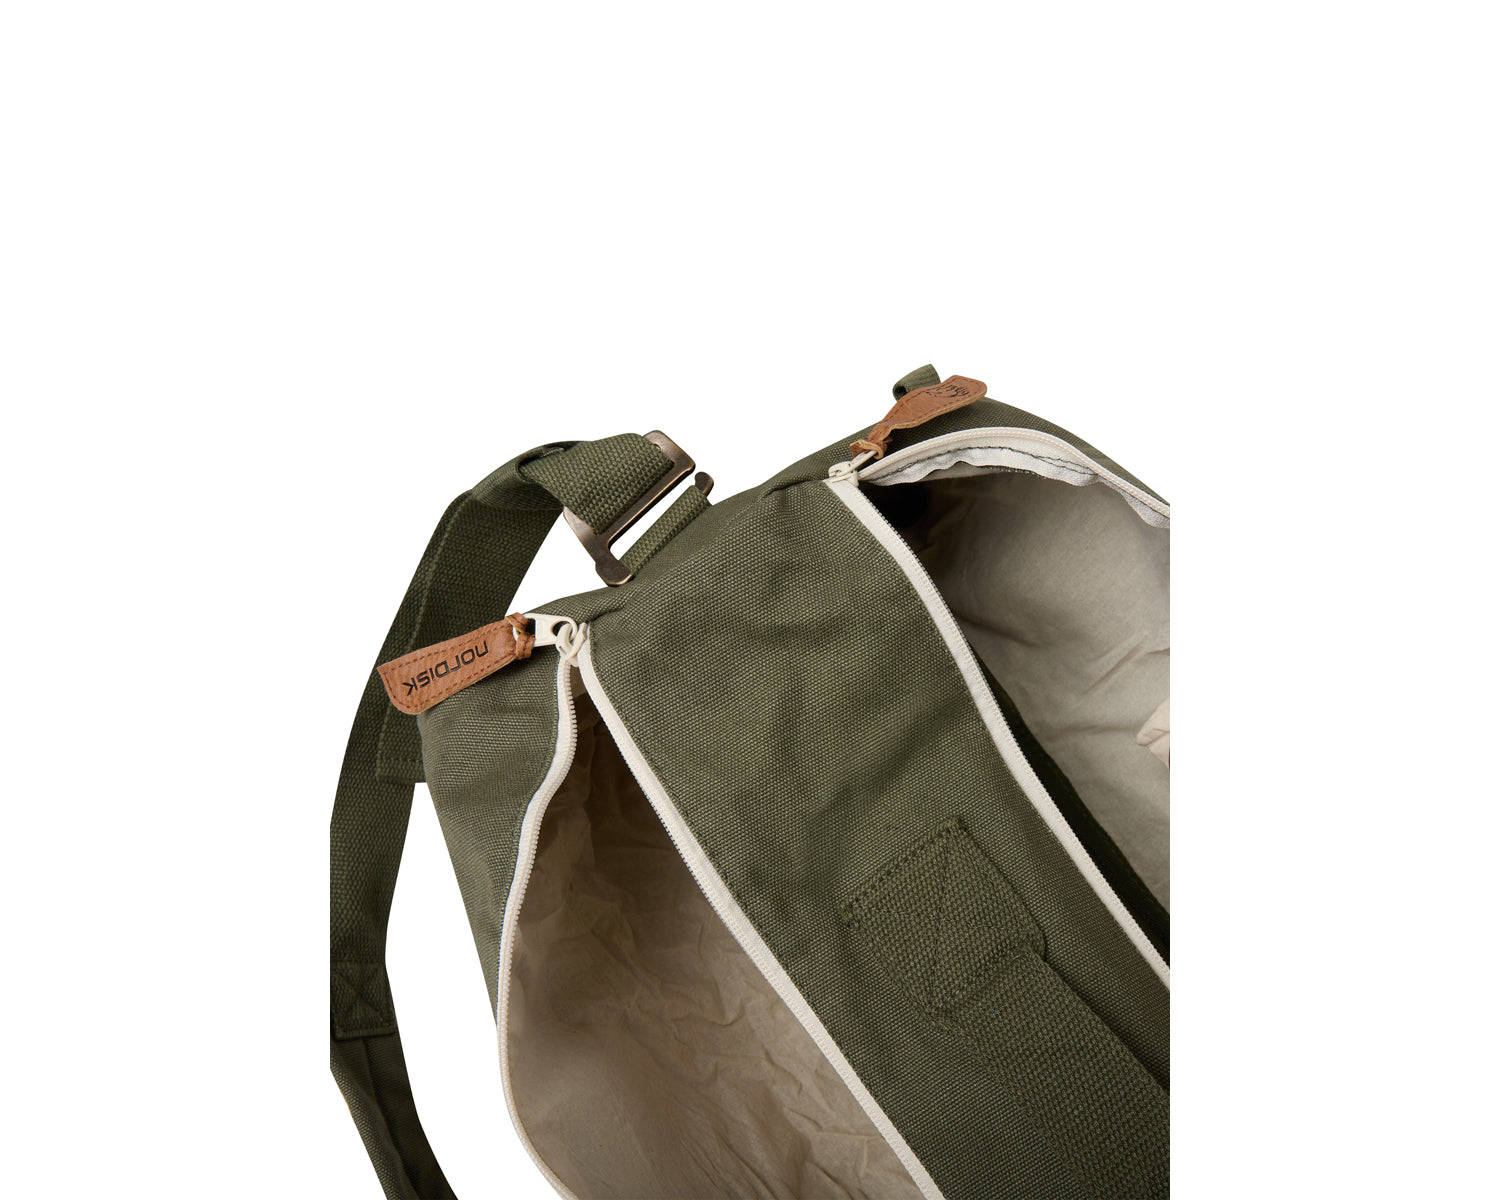 Karlstad 27 duffel bag - 27 L - Four Leaf Clover